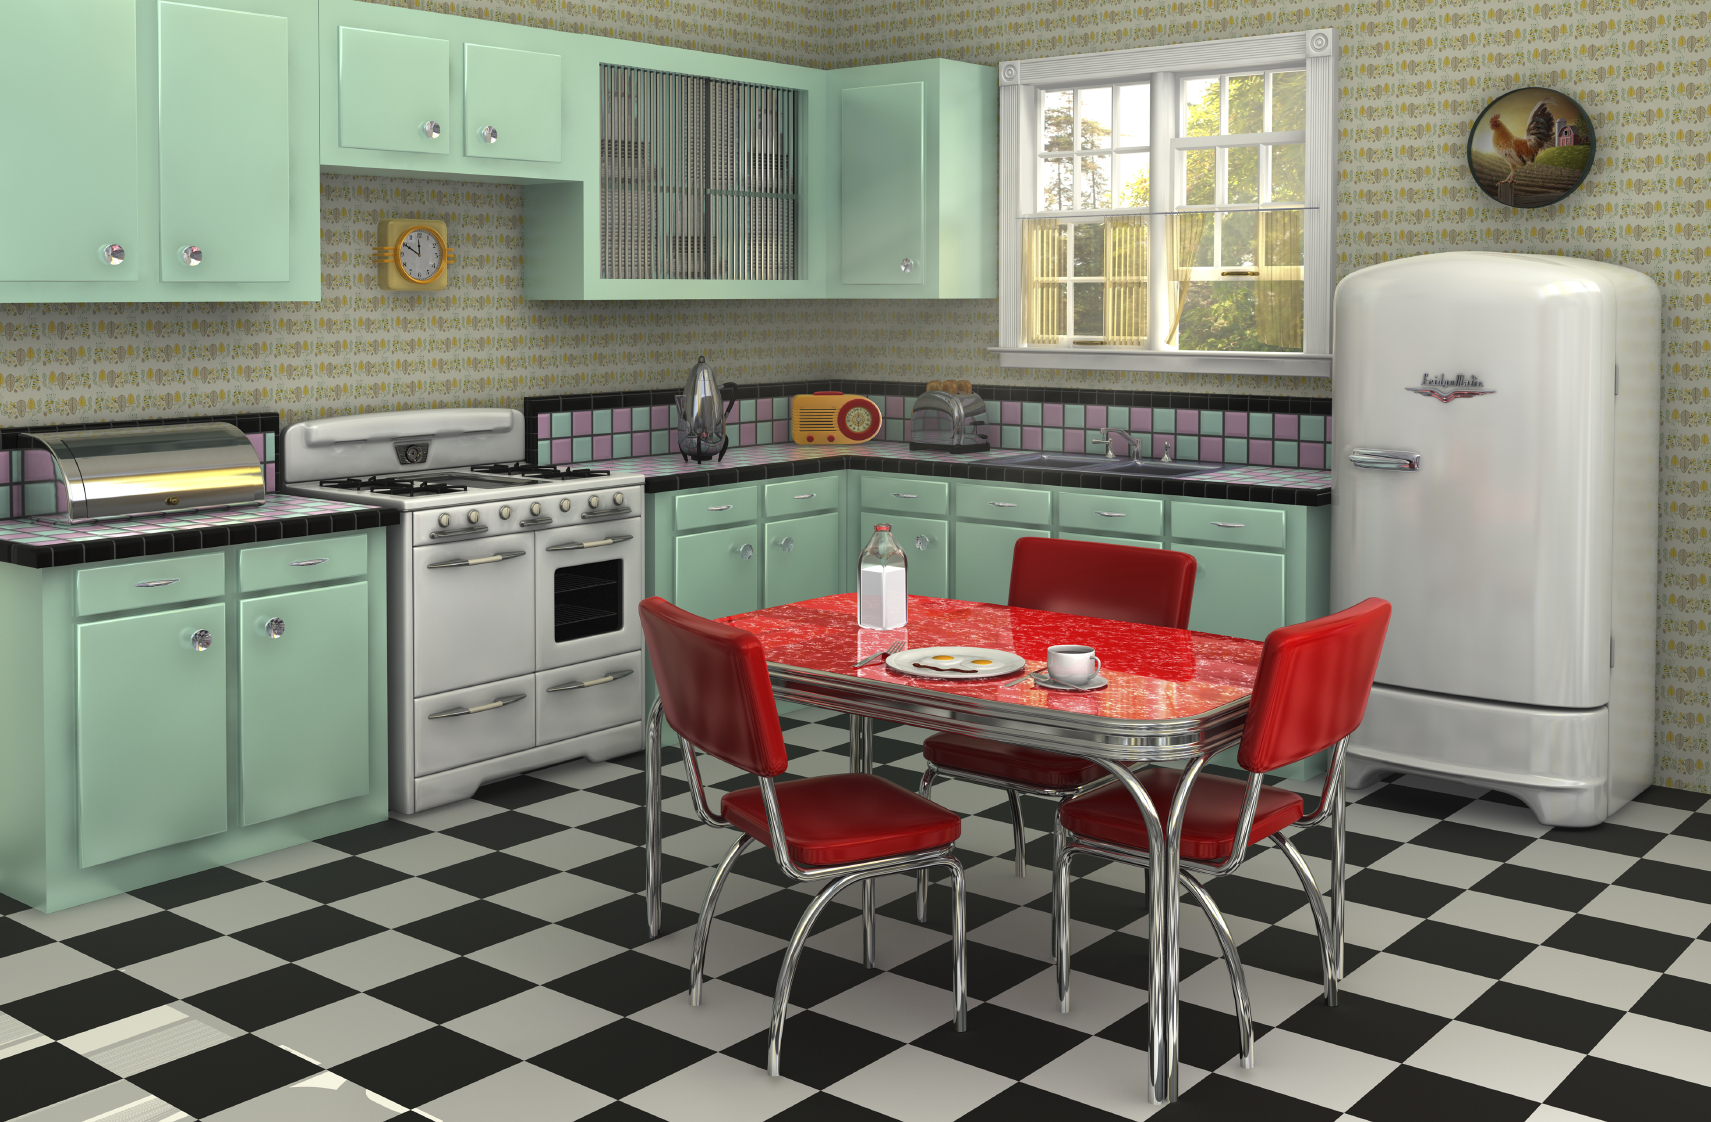 Classic 1950s Kitchen Design